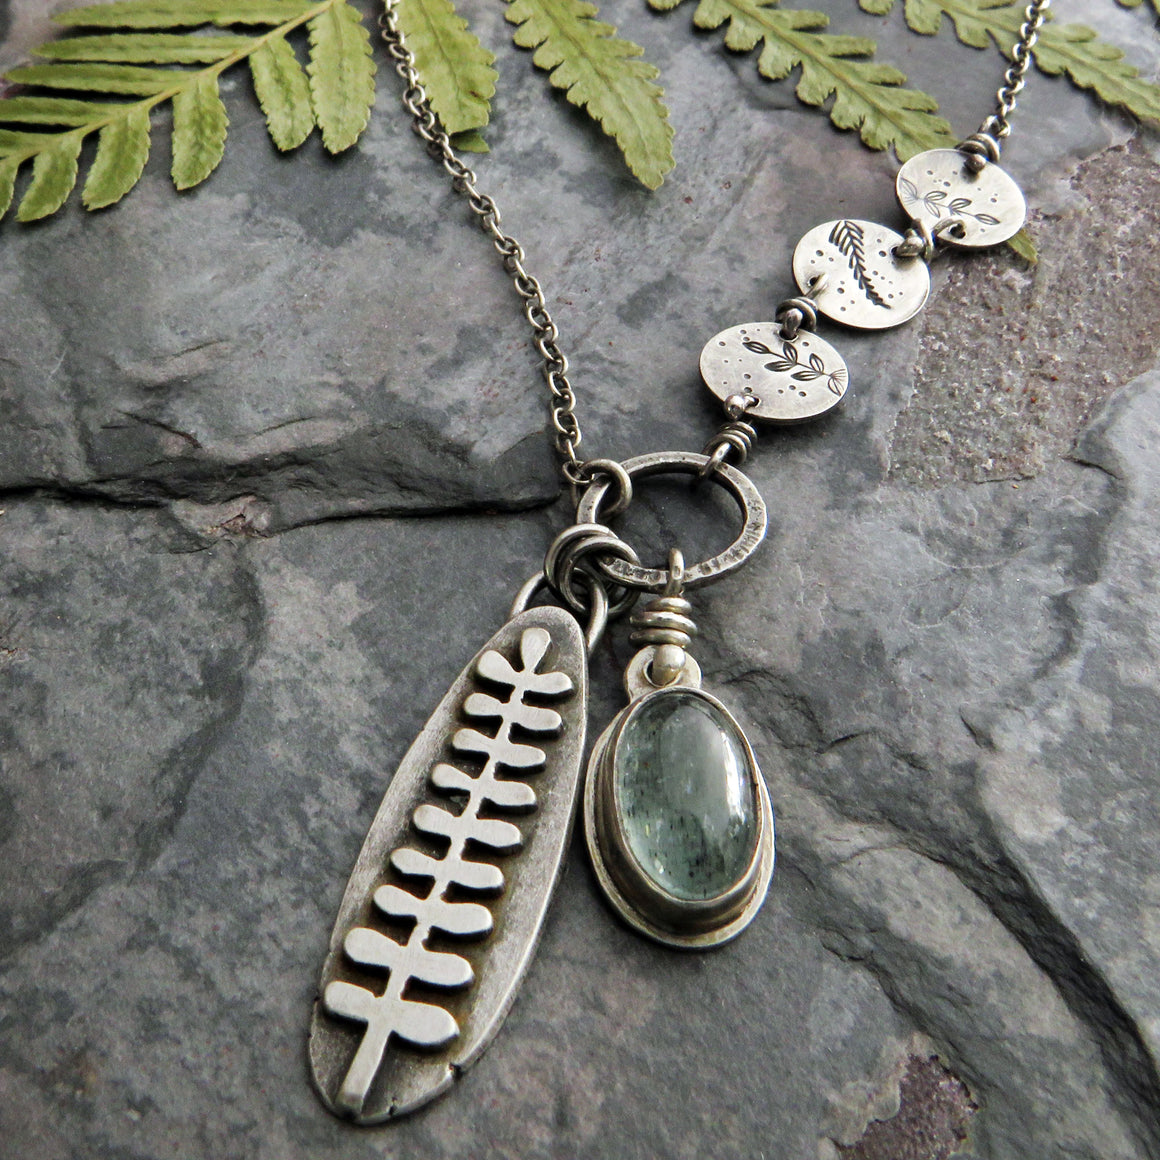 Botanical Charm Necklace with Moss Aquamarine